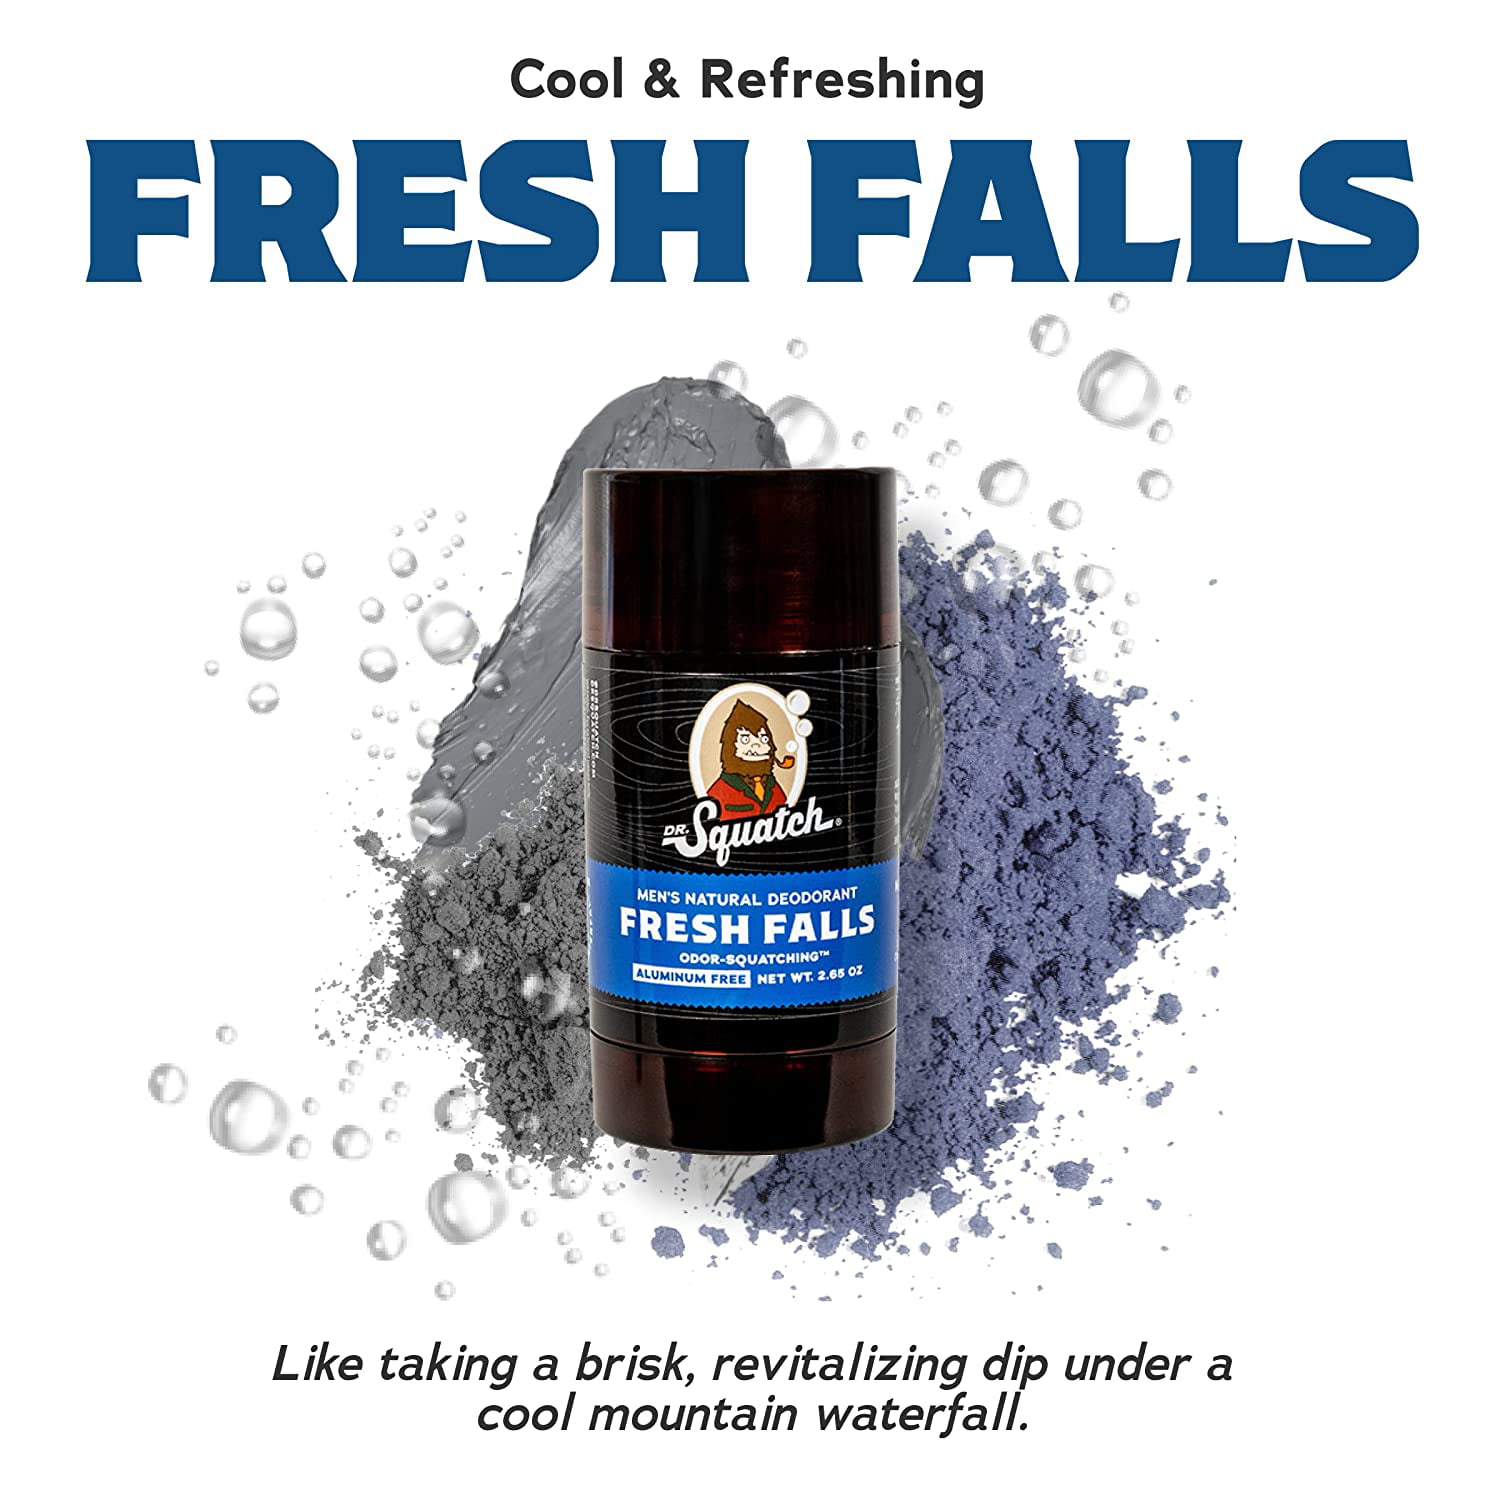 Dr. Squatch Fresh Falls Natural Men's Deodorant, 2.65 oz - Fry's